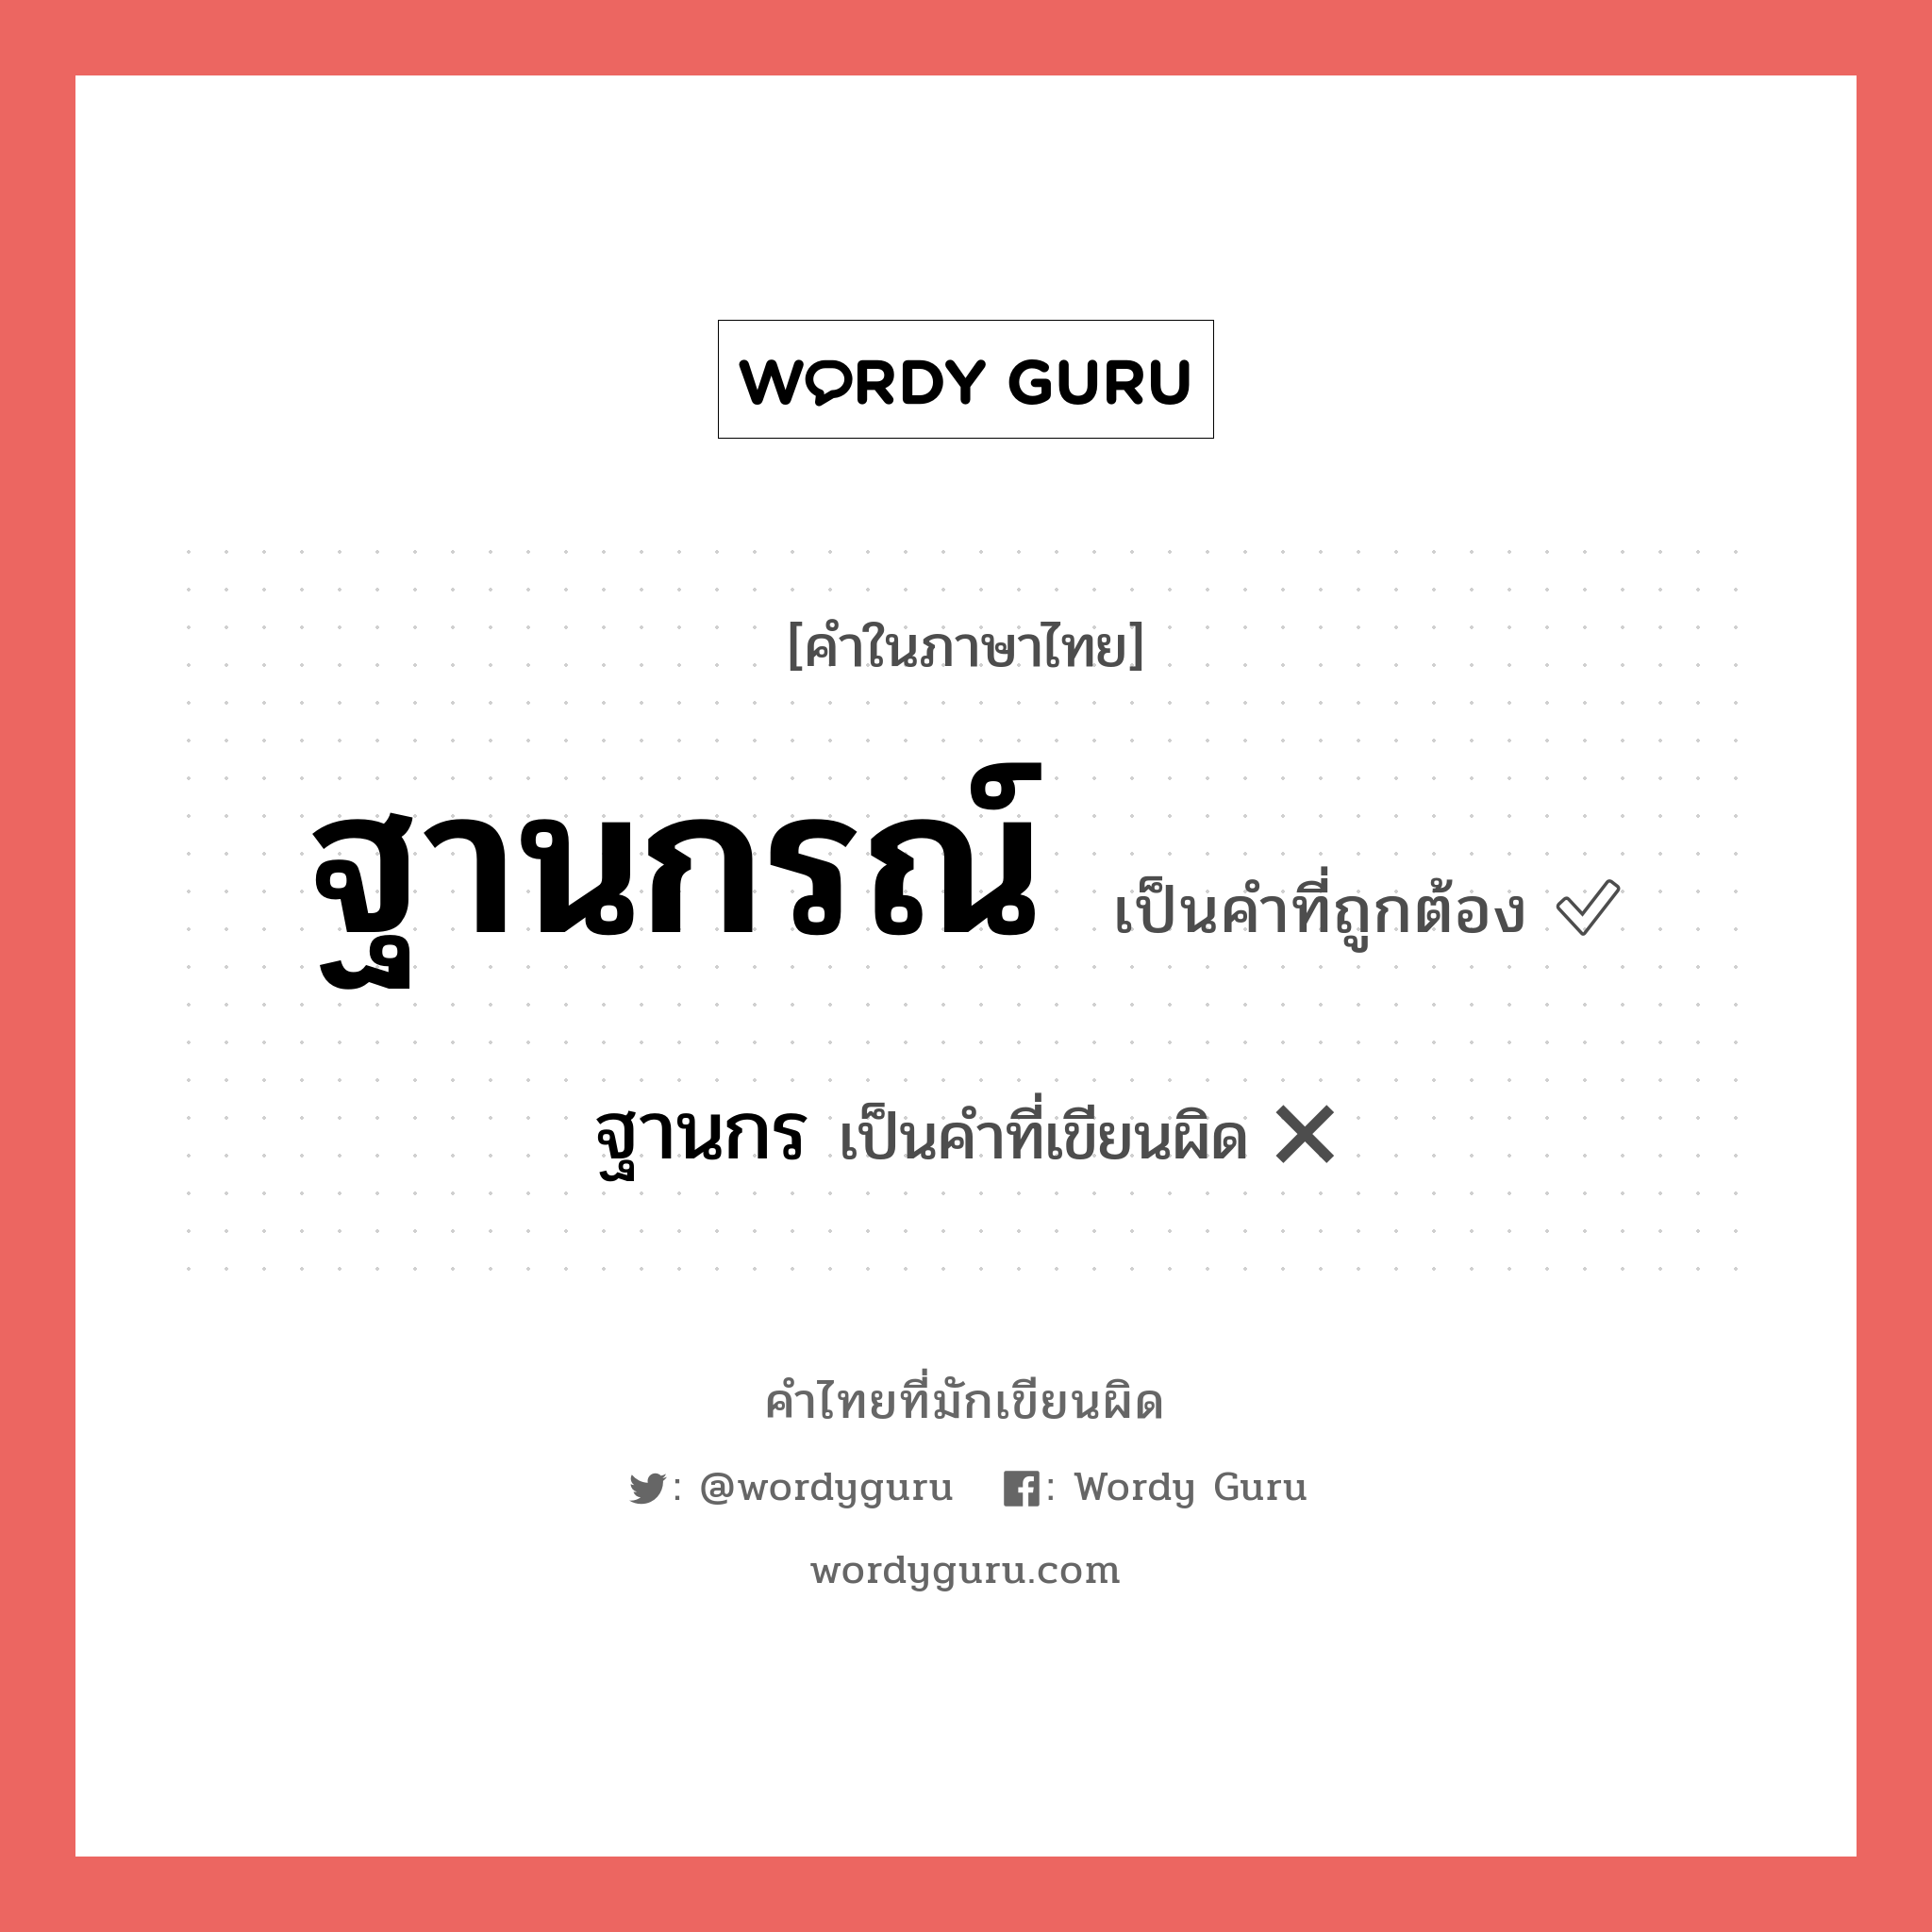 ฐานกรณ์ หรือ ฐานกร คำไหนเขียนถูก?, คำในภาษาไทยที่มักเขียนผิด ฐานกรณ์ คำที่ผิด ❌ ฐานกร